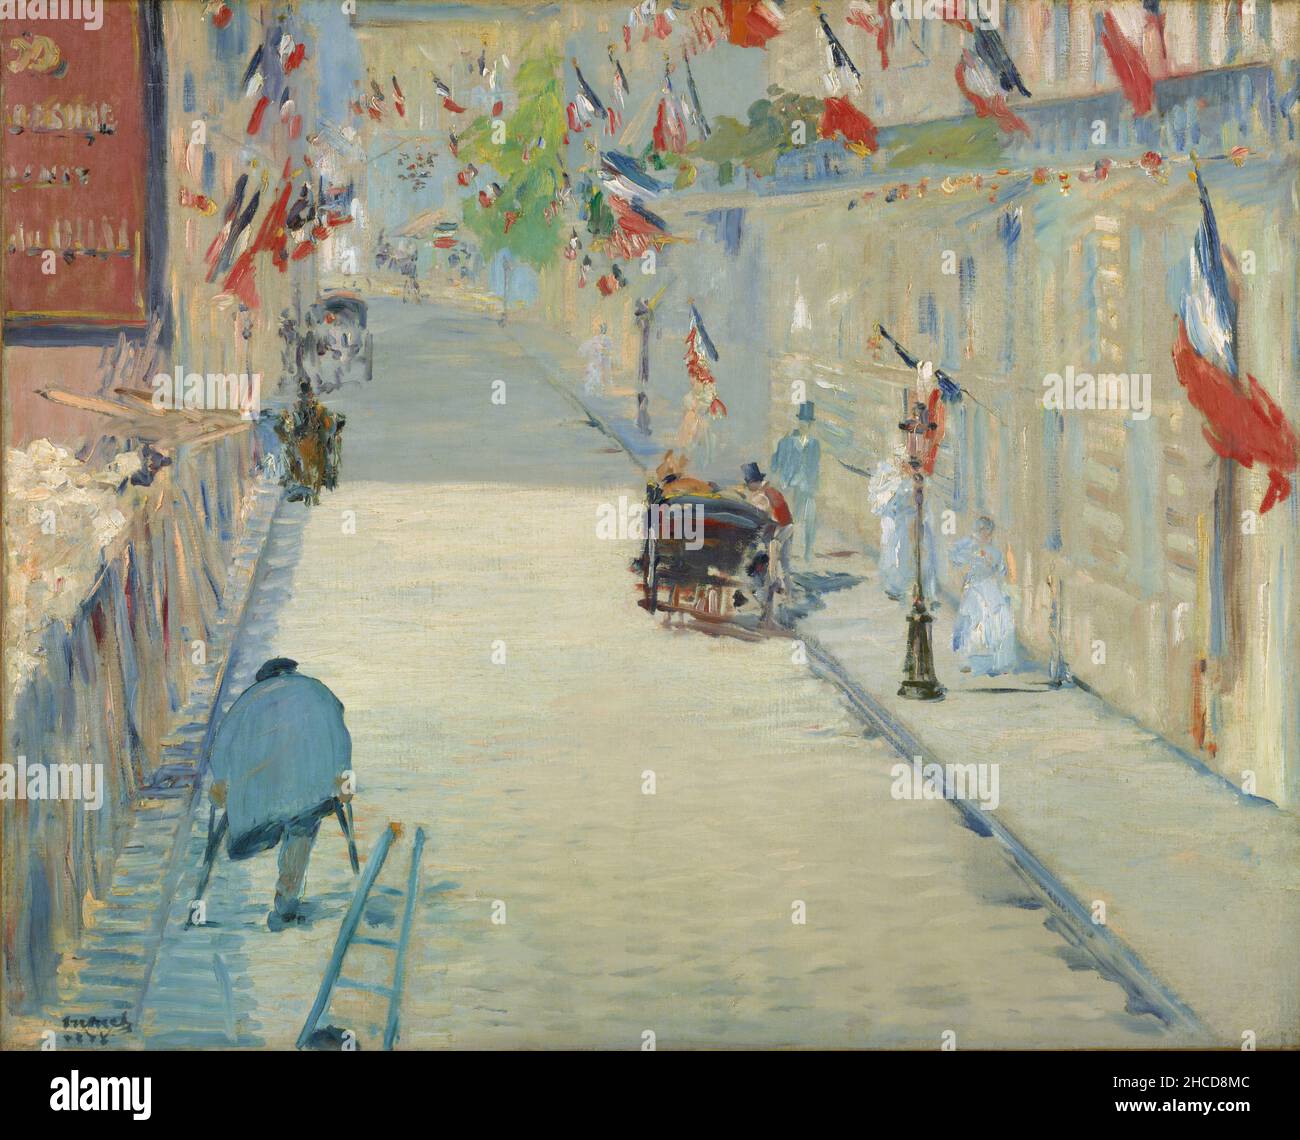 La rue Mosnier avec les drapeaux d'Édouard Manet.Le tableau montre la rue Mosnier, aujourd'hui la rue de Berne, qui est surplombée par le studio de Manet au 4 rue de Saint-Pétersbourg, ornée de drapeaux français pour la première fête nationale du 30 juin 1878, la Fête de la paix Banque D'Images